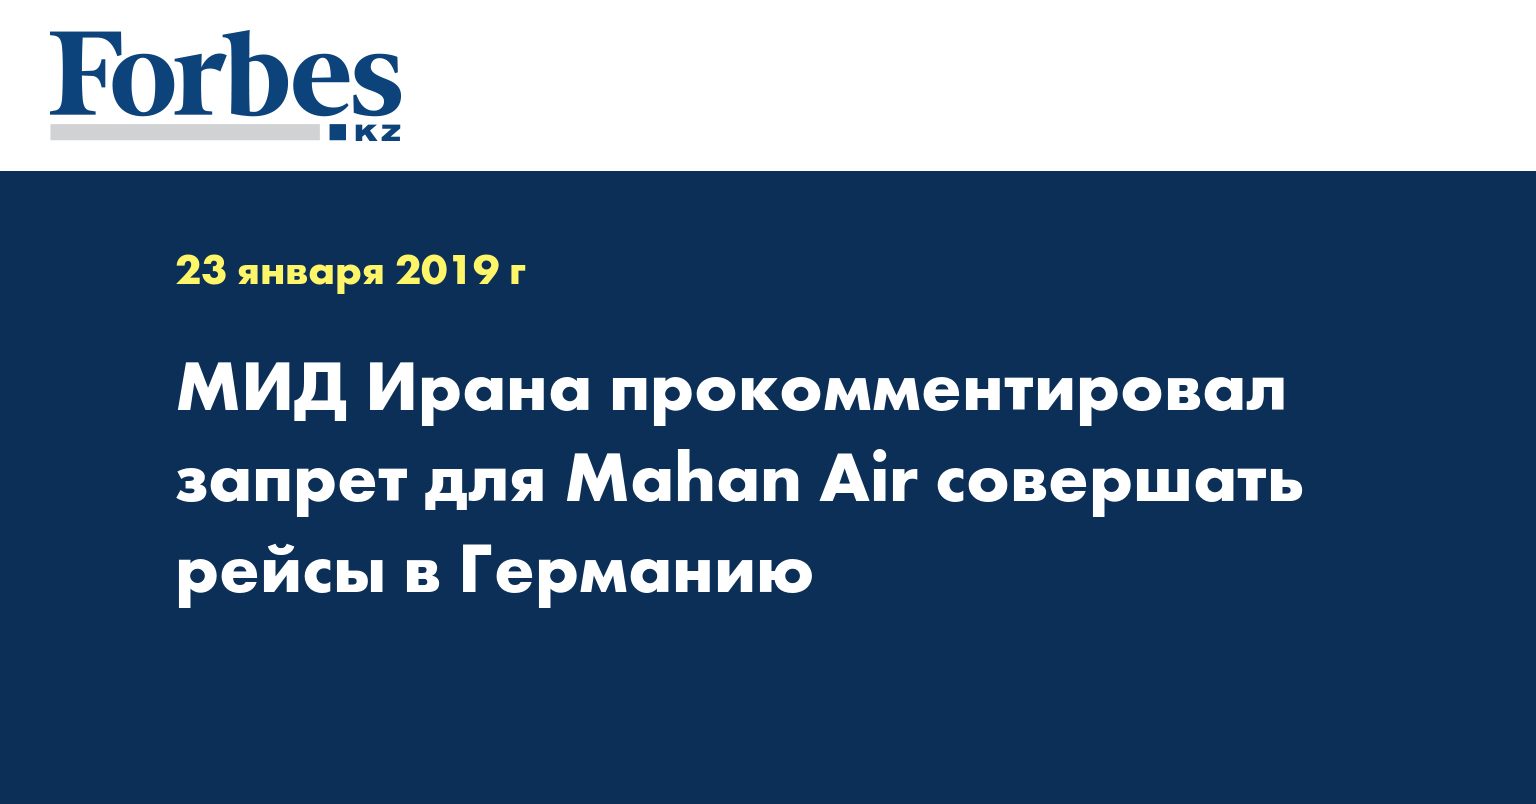 МИД Ирана прокомментировал запрет для Mahan Air совершать рейсы в Германию